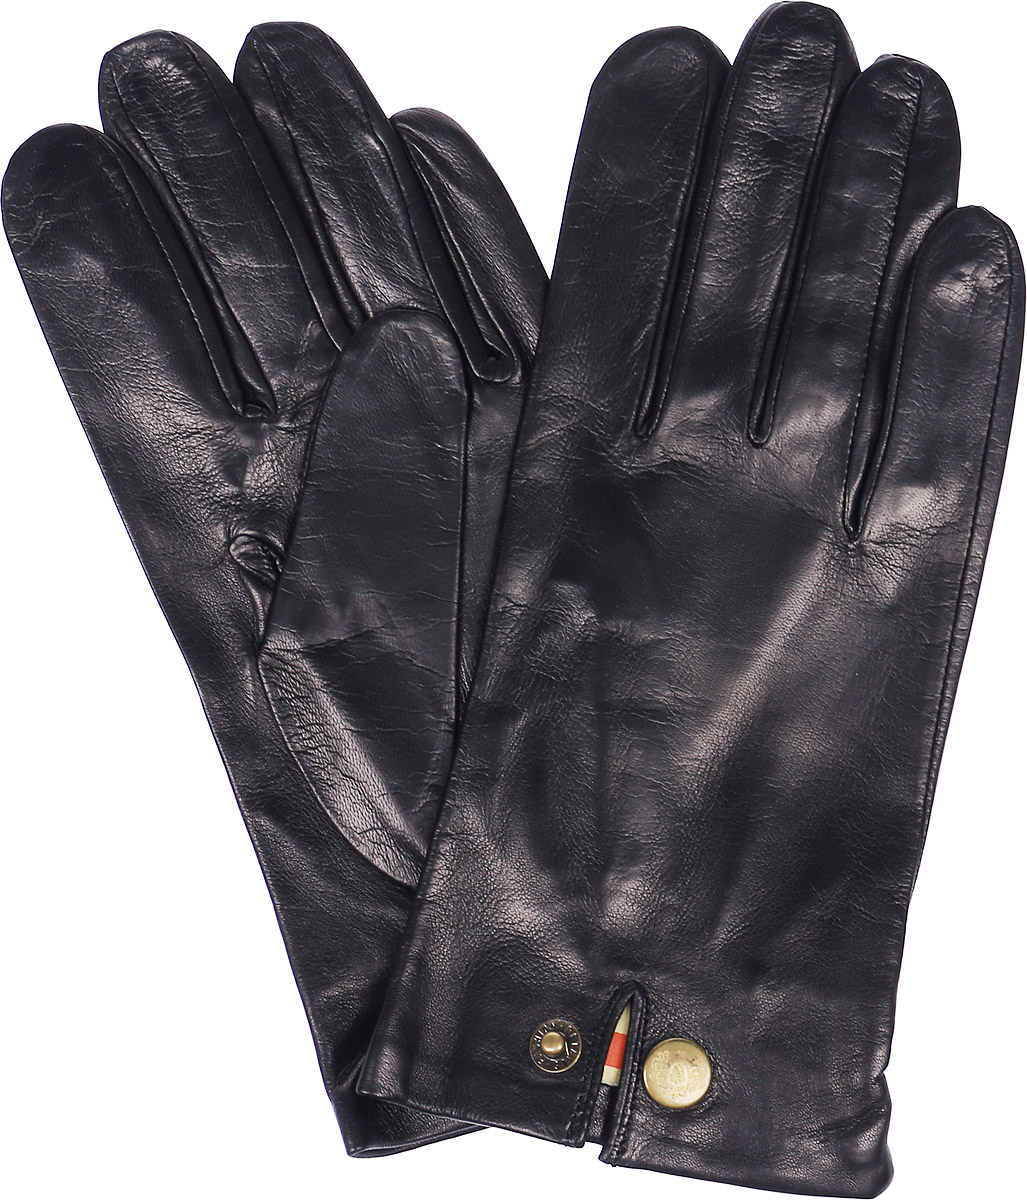 Перчатки мужские Michel Katana, цвет: черный. K81-EVENCH. Размер 9,5